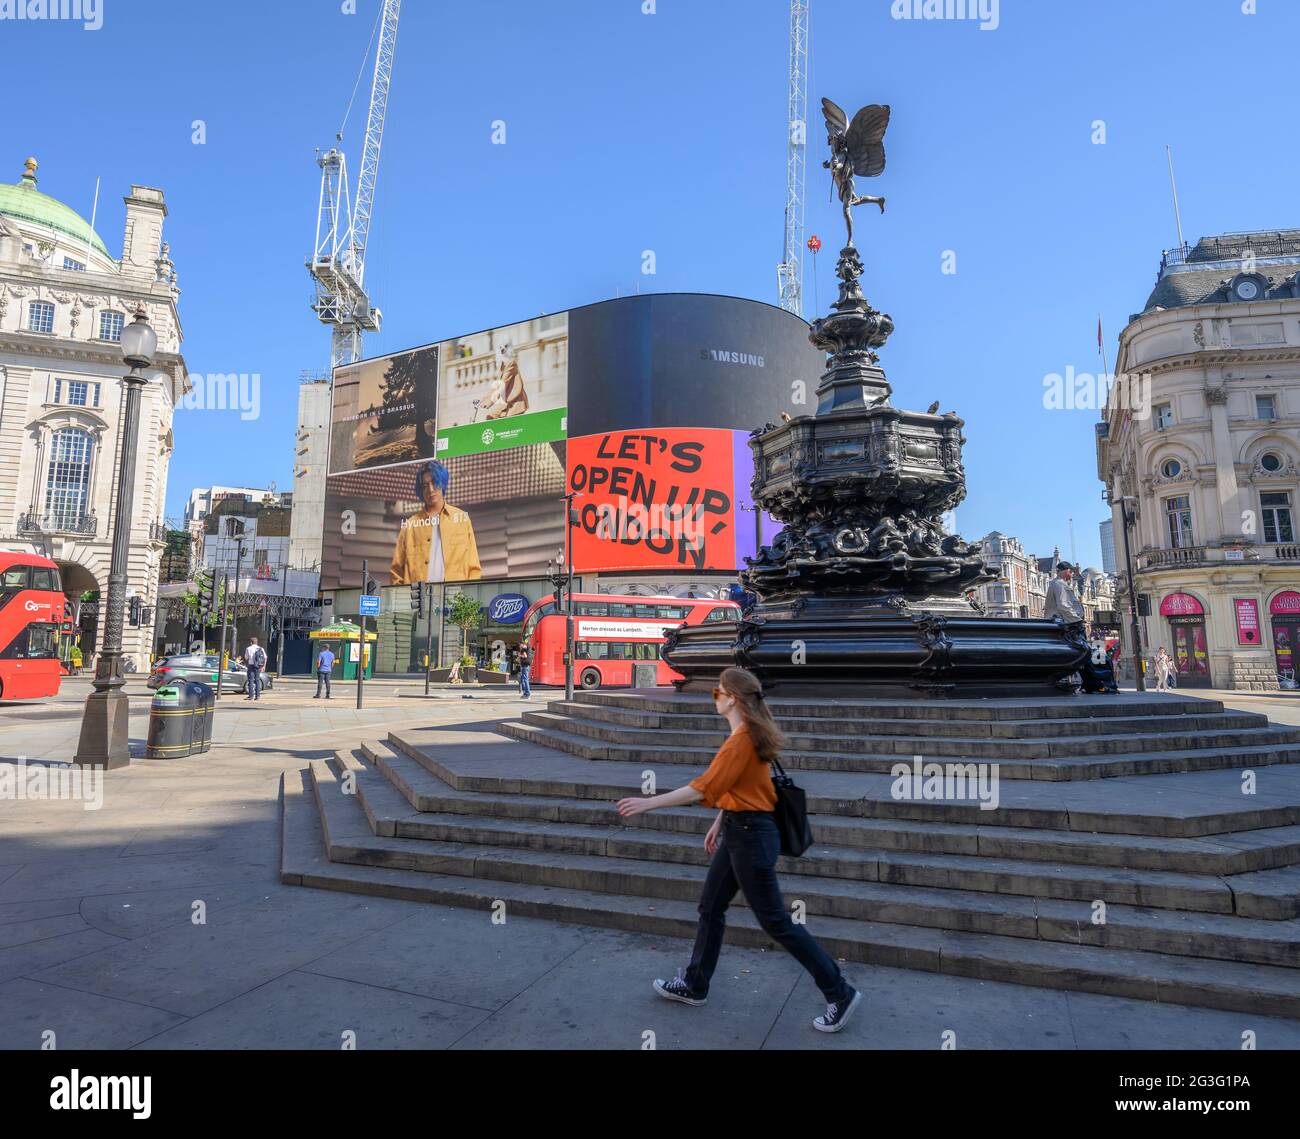 Piccadilly Circus, London, Großbritannien. 16. Juni 2021. Heißer Tag im Zentrum Londons mit dem Slogan auf der elektronischen Tafel im Piccadilly Circus ‘Let’s Open Up London’. Gewitter werden später prognostiziert. Quelle: Malcolm Park/Alamy Live News. Stockfoto